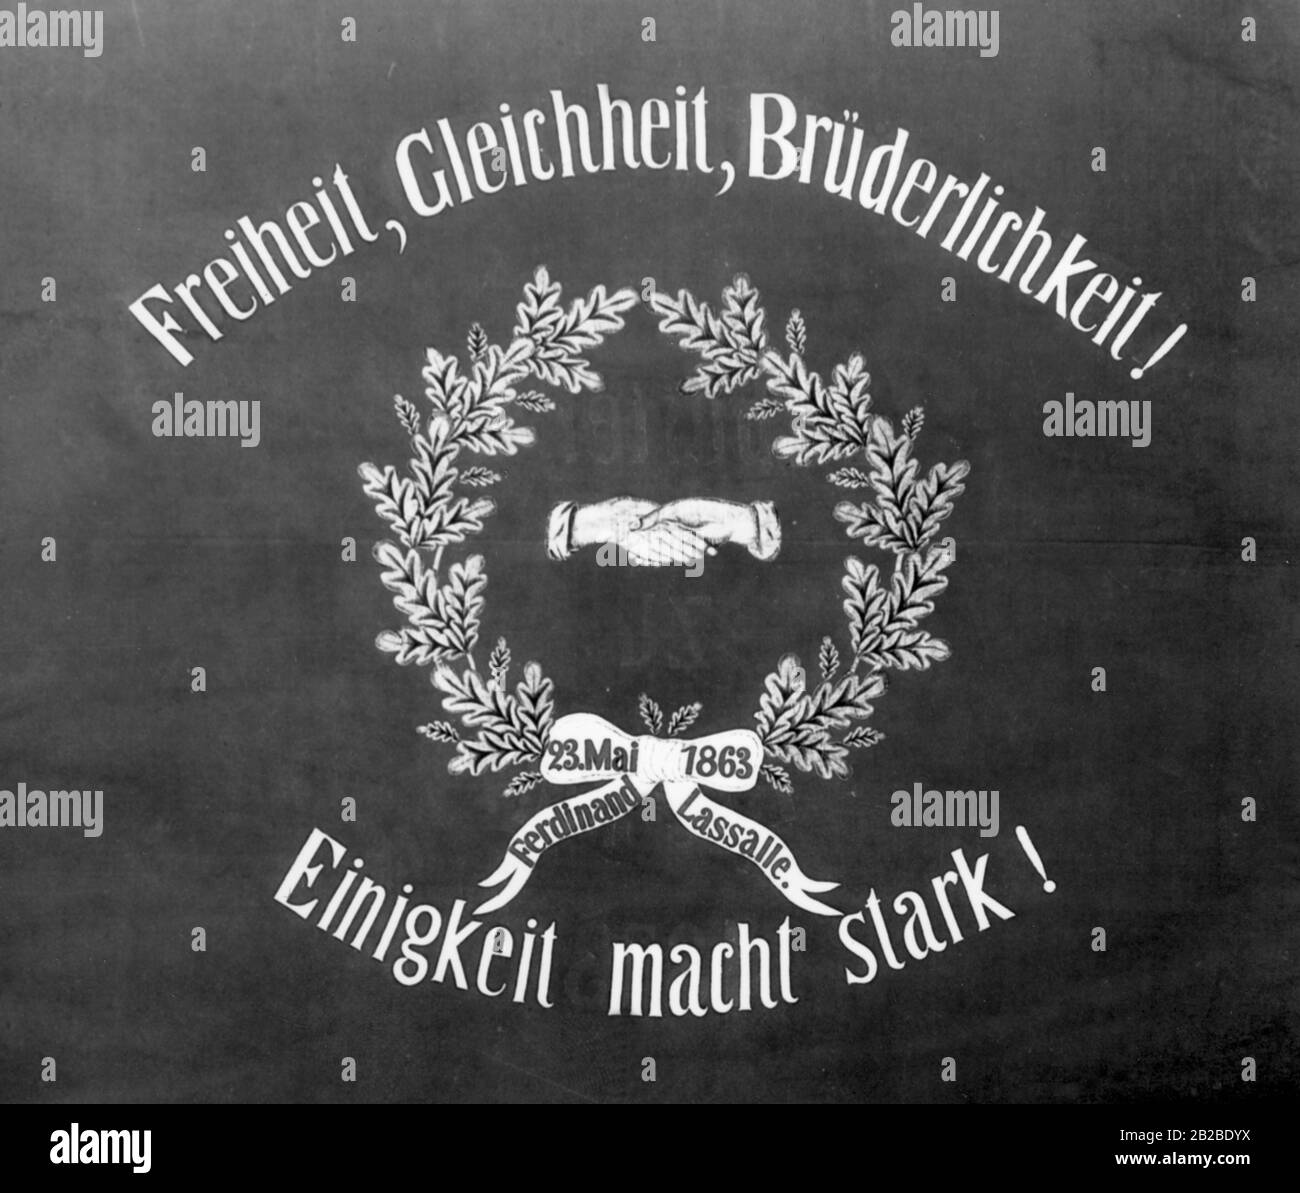 Auf dem Traditionsbanner steht das Motto der SPD. Die Fahne stammt von der Breslauer Parteiorganisation. Undatiertes Bild. Stockfoto